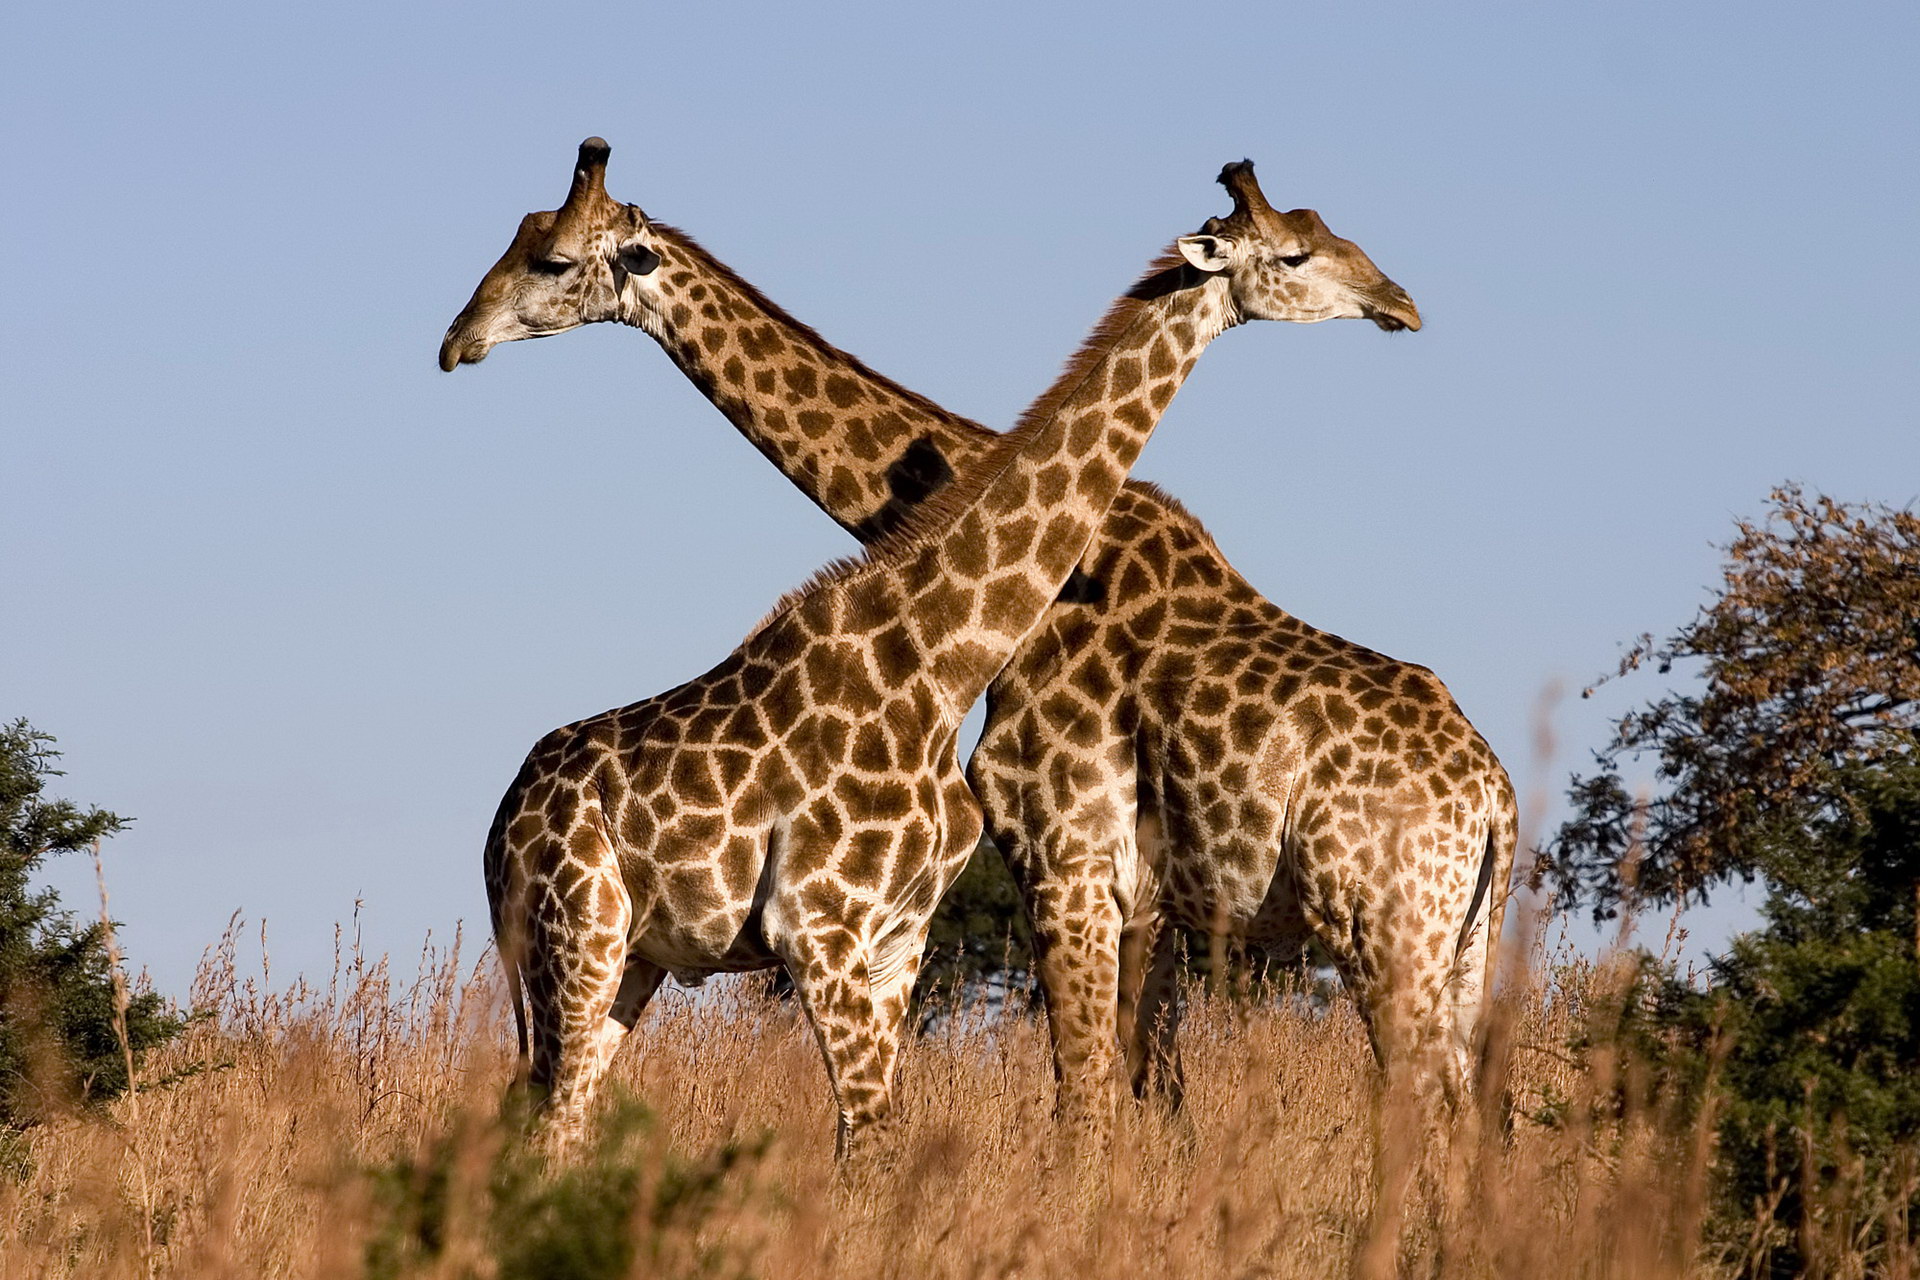 Usa ka parisan sa mga giraffe